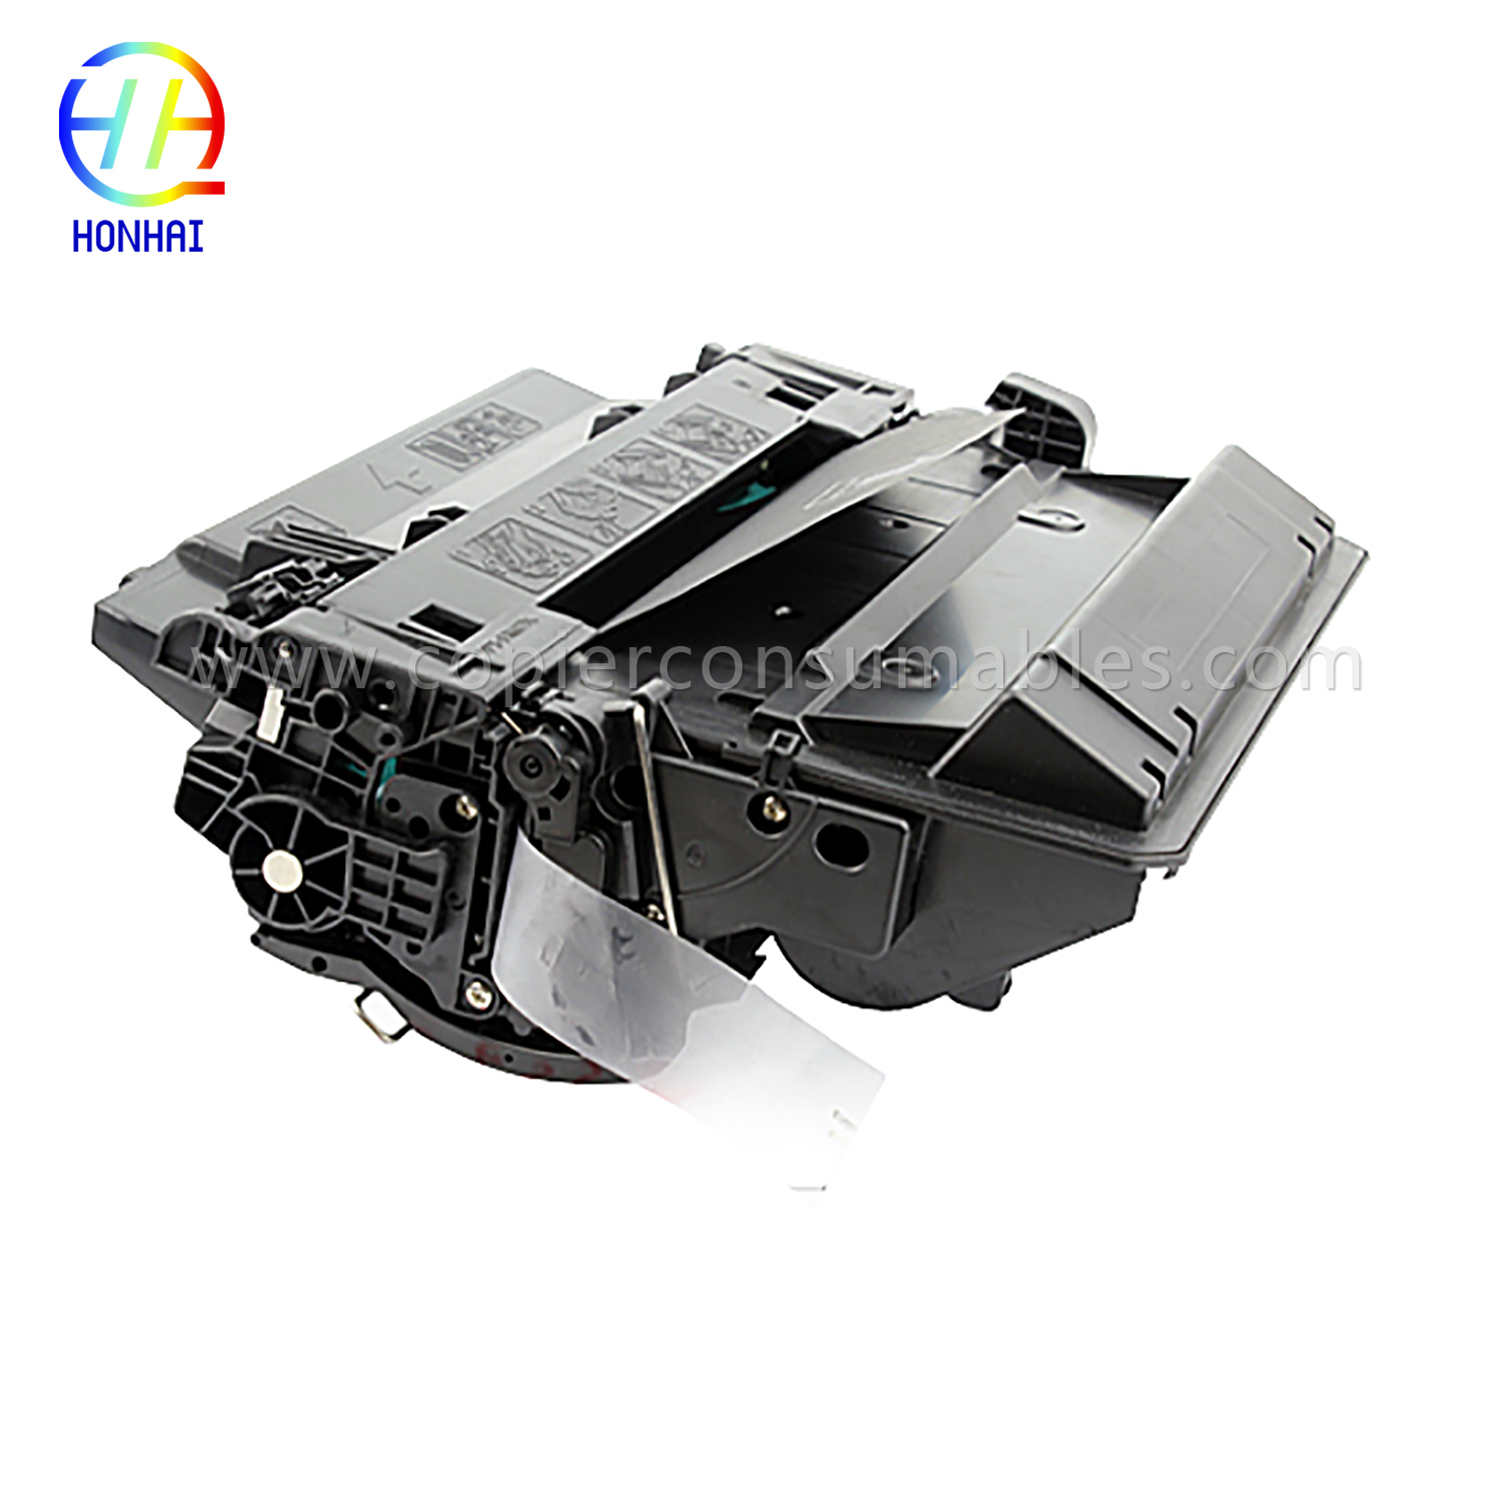 Kartrid Toner Warna HP LaserJet LaserJet Pro MFP M521dn Enterprise P3015 (CE255X) -1 (3) 拷贝